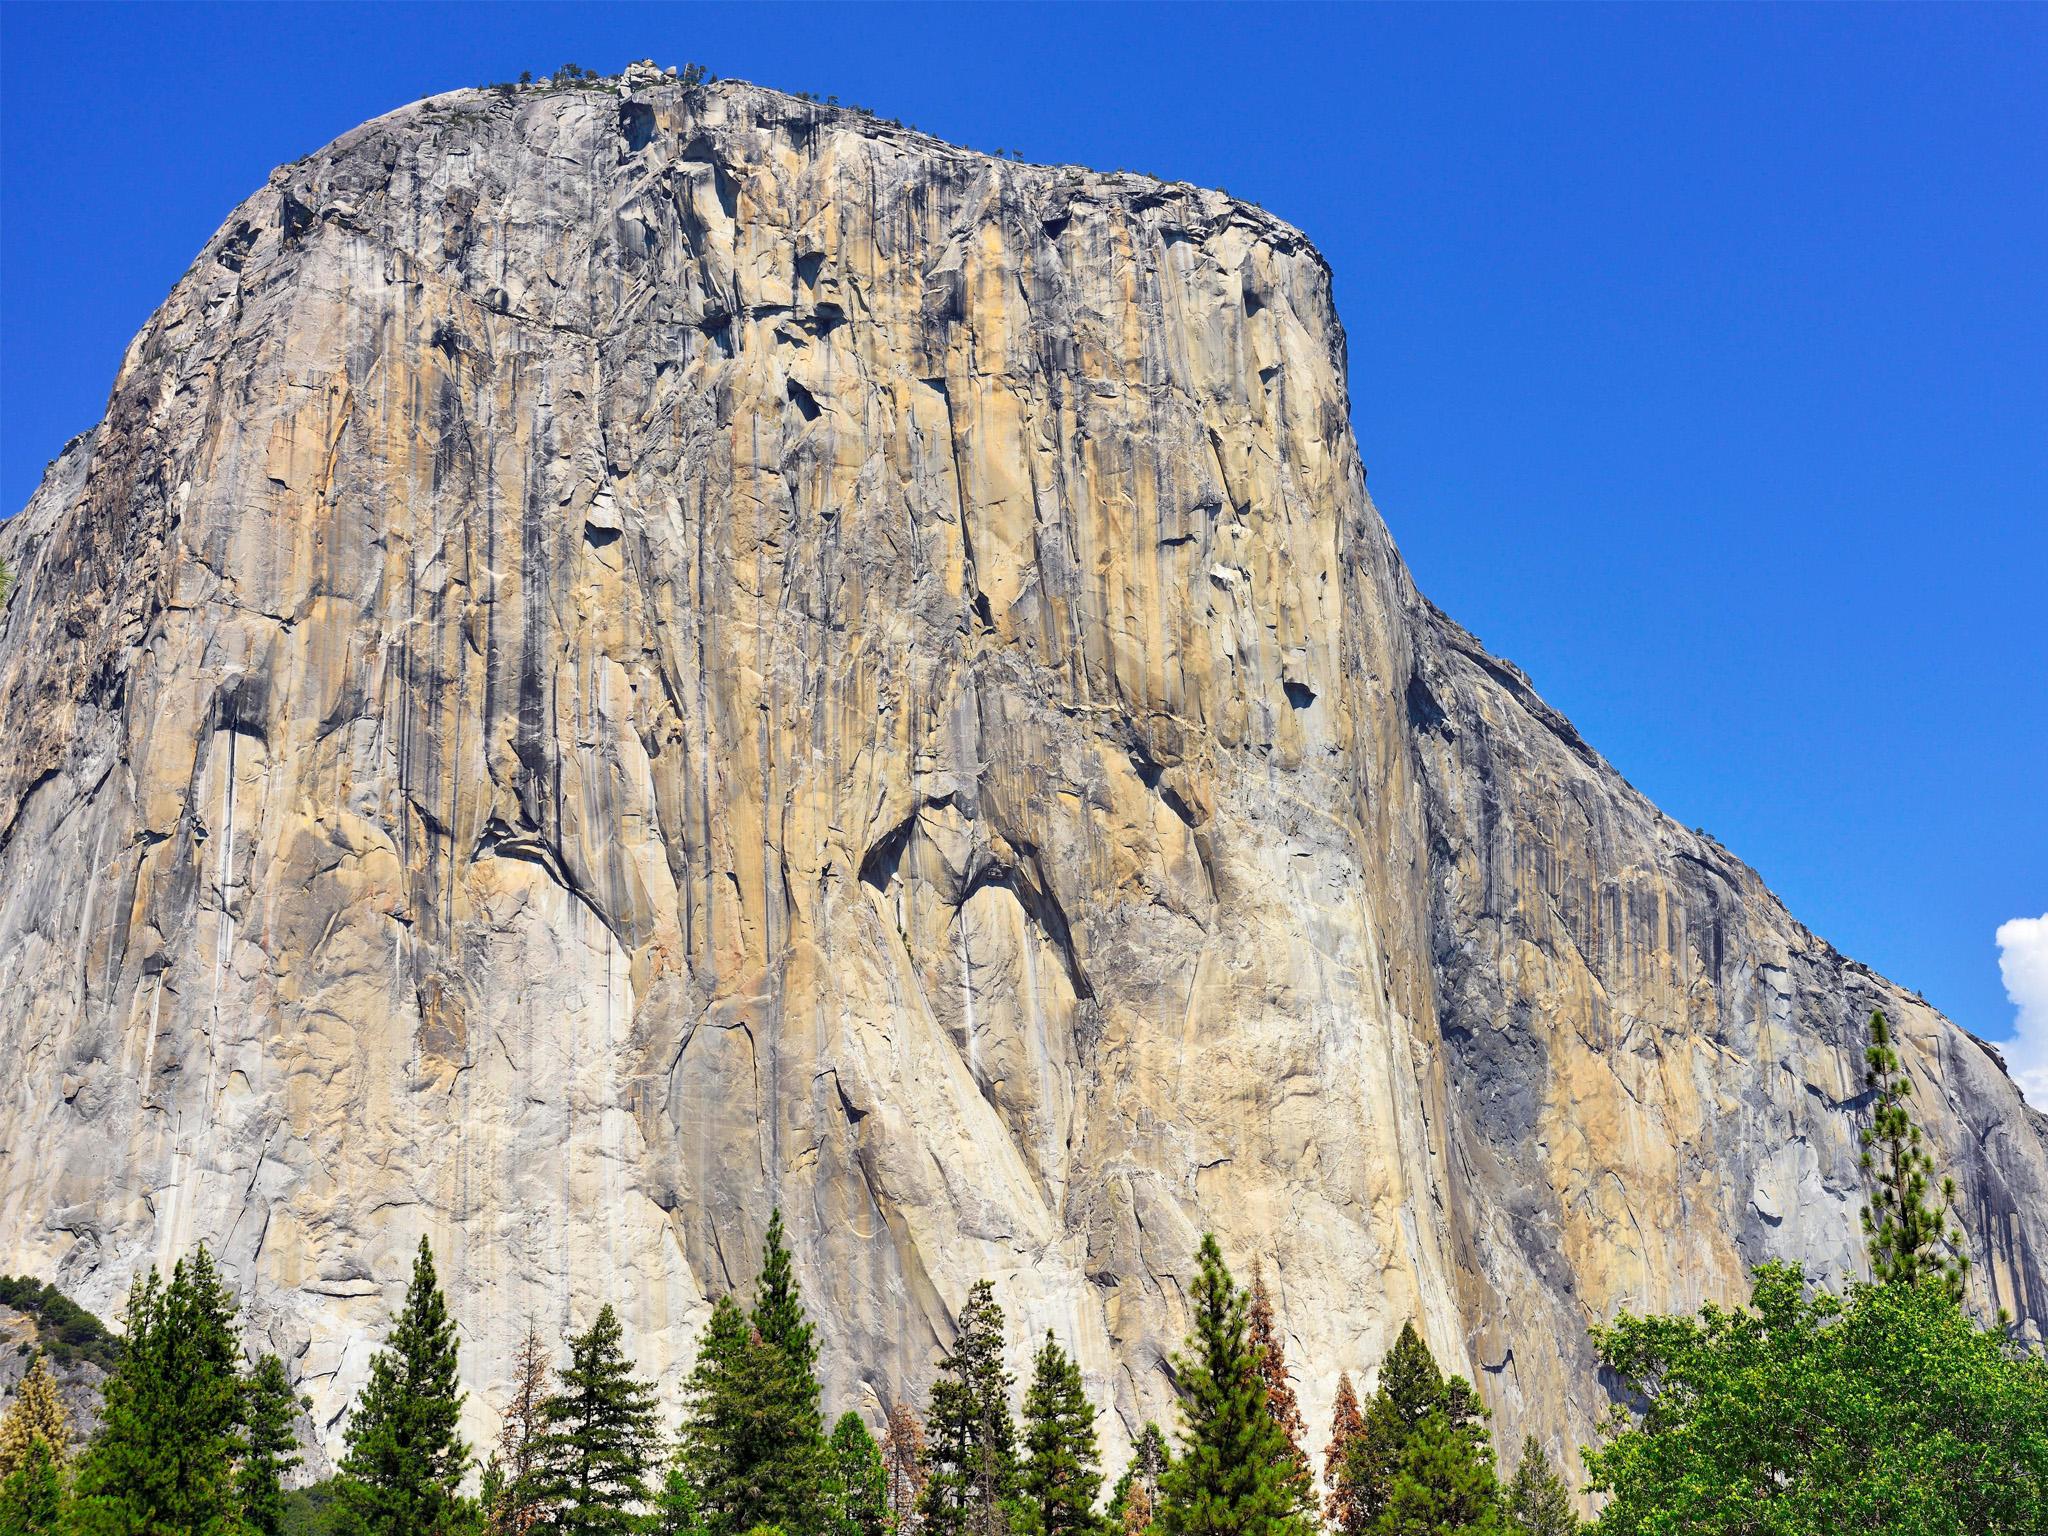 The El Capitan rock formation in California's Yosemite Valley